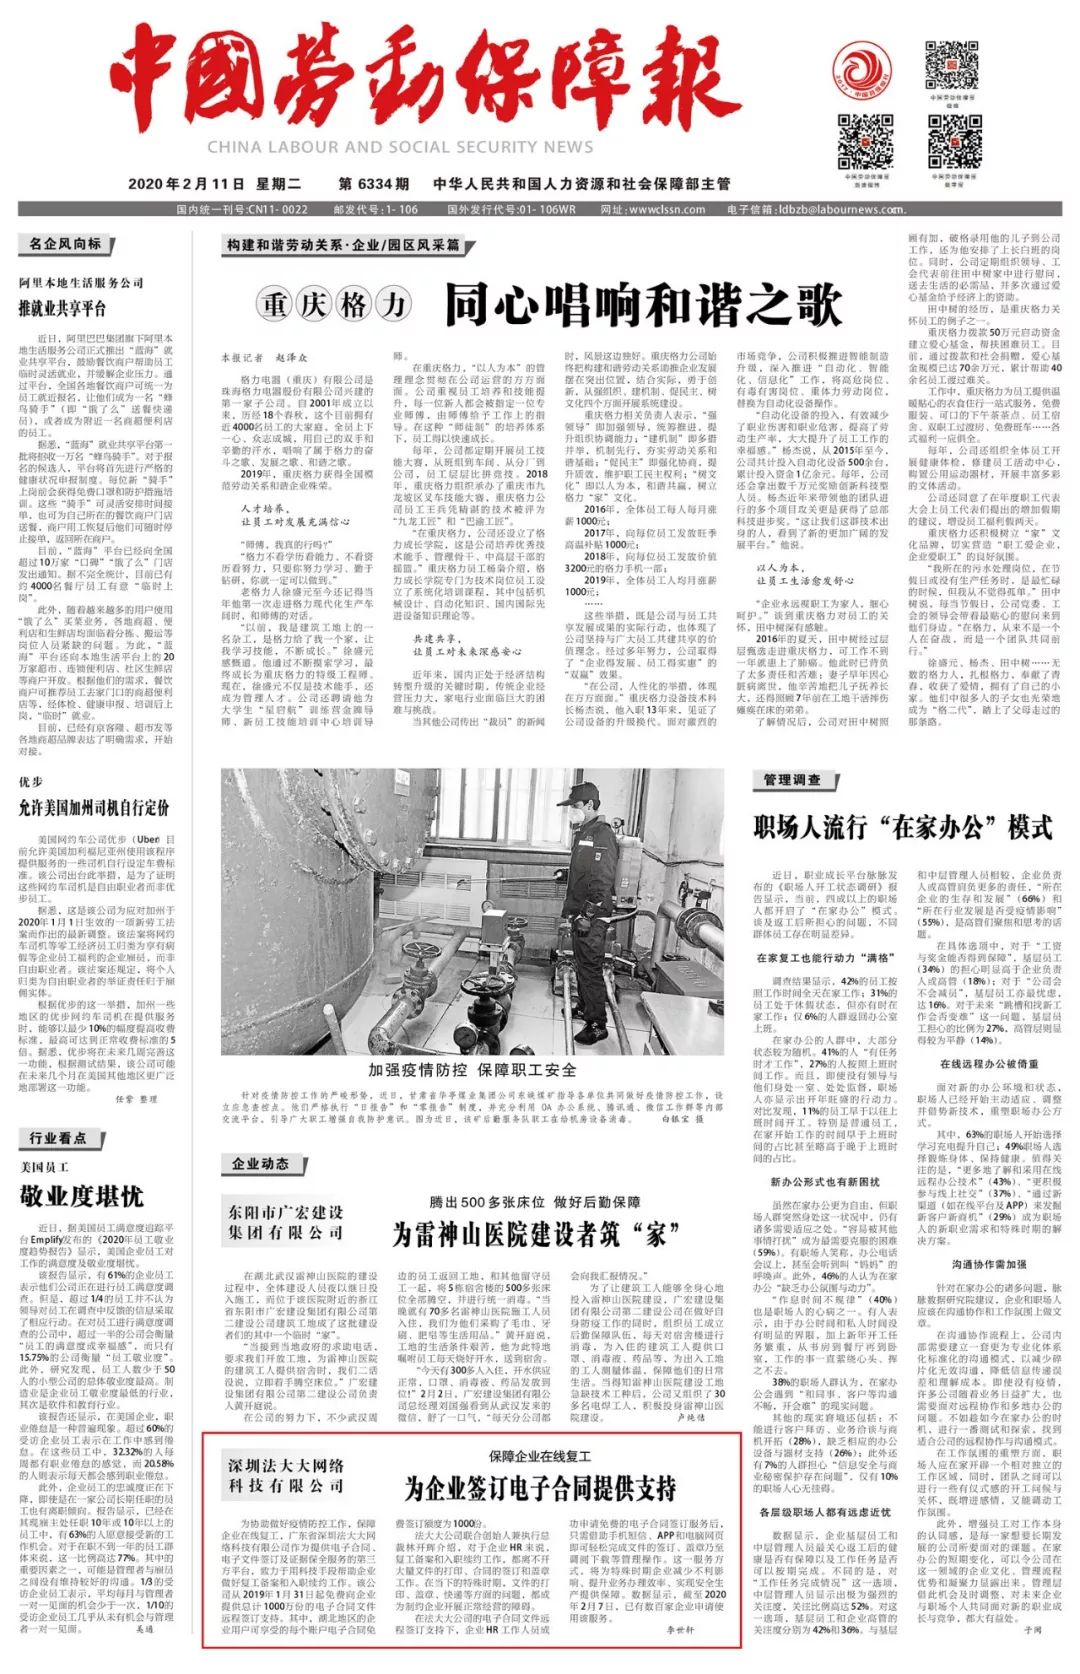 《中国劳动保障报》:法大大为企业签订